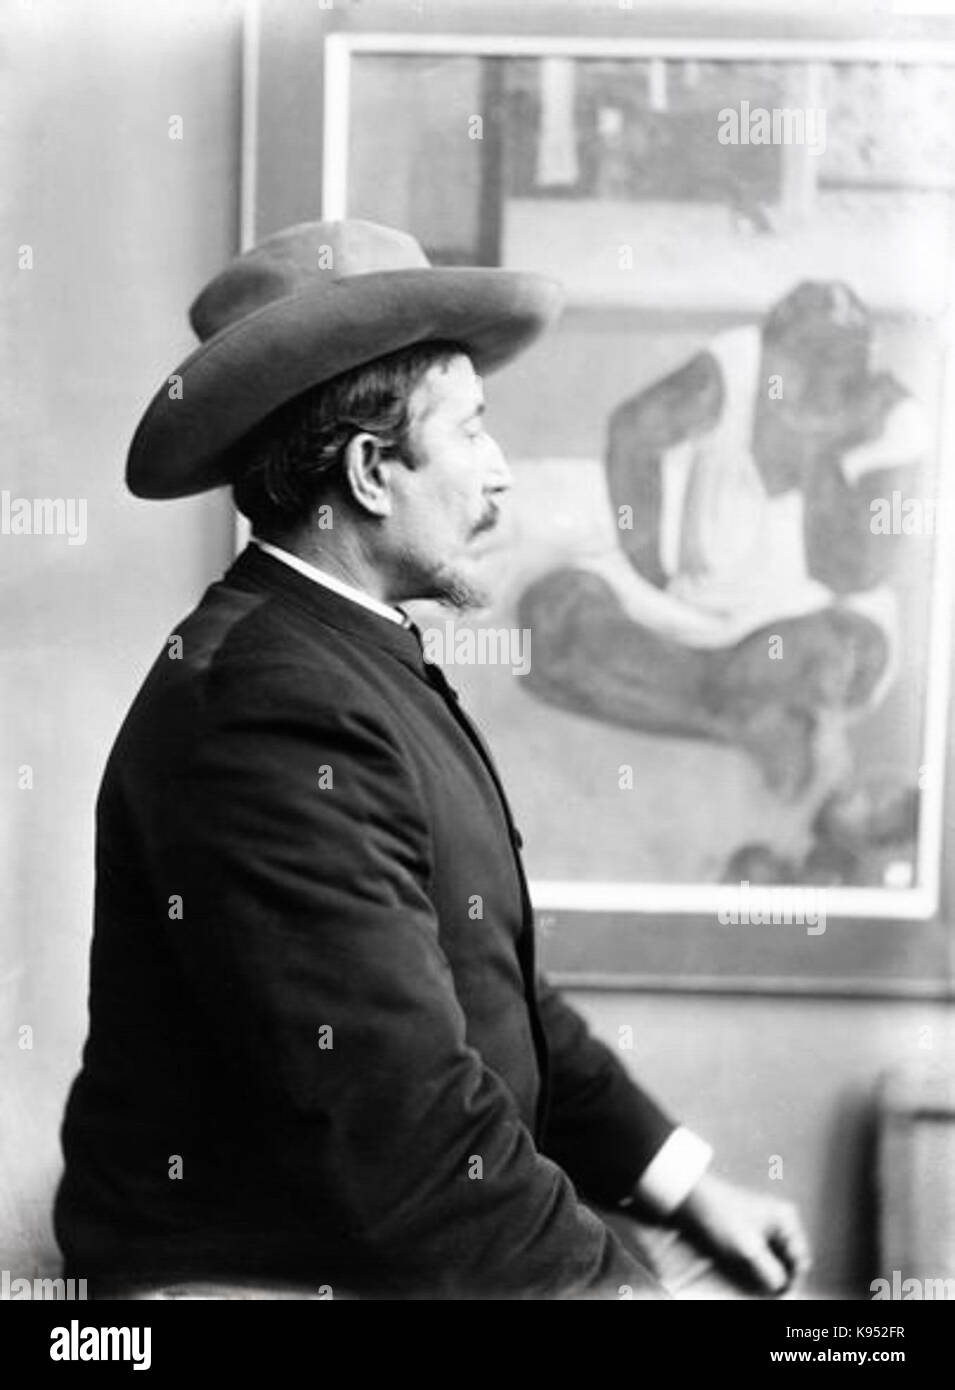 Archives Larousse Paul Gauguin à son exposition 1893 Durand Ruel posant devant Banque D'Images